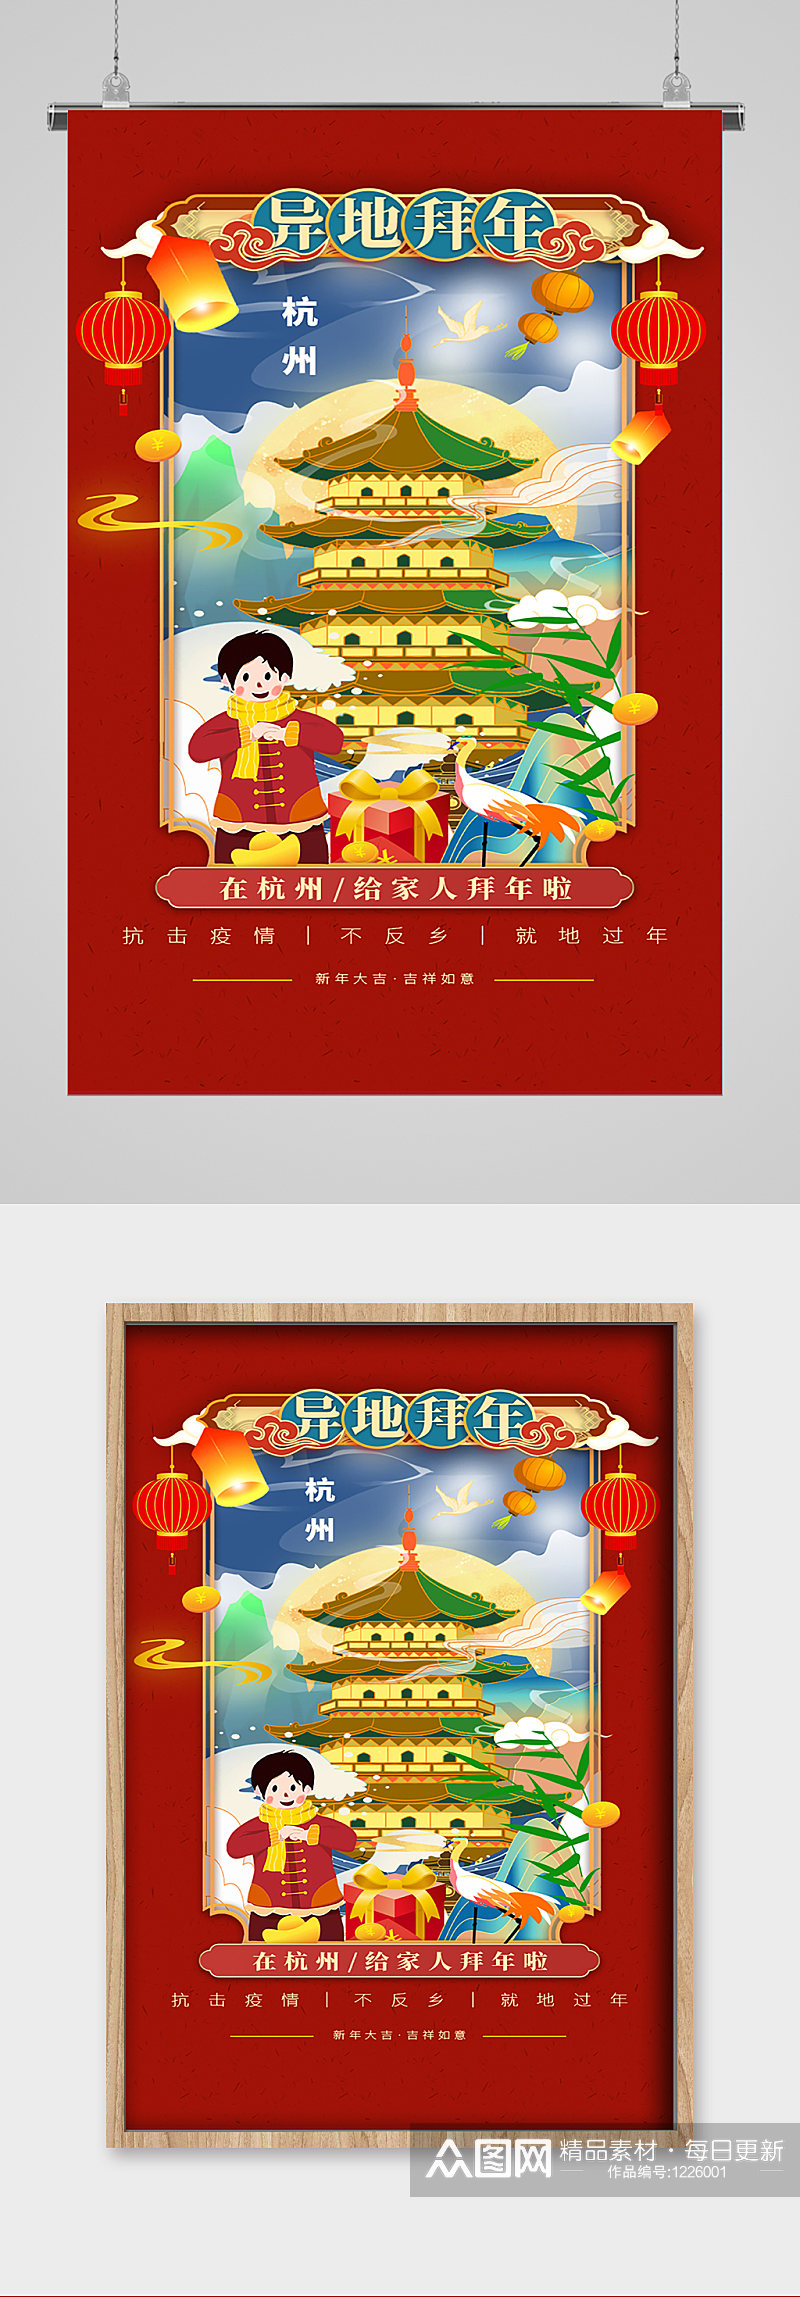 杭州异地拜年宣传海报素材